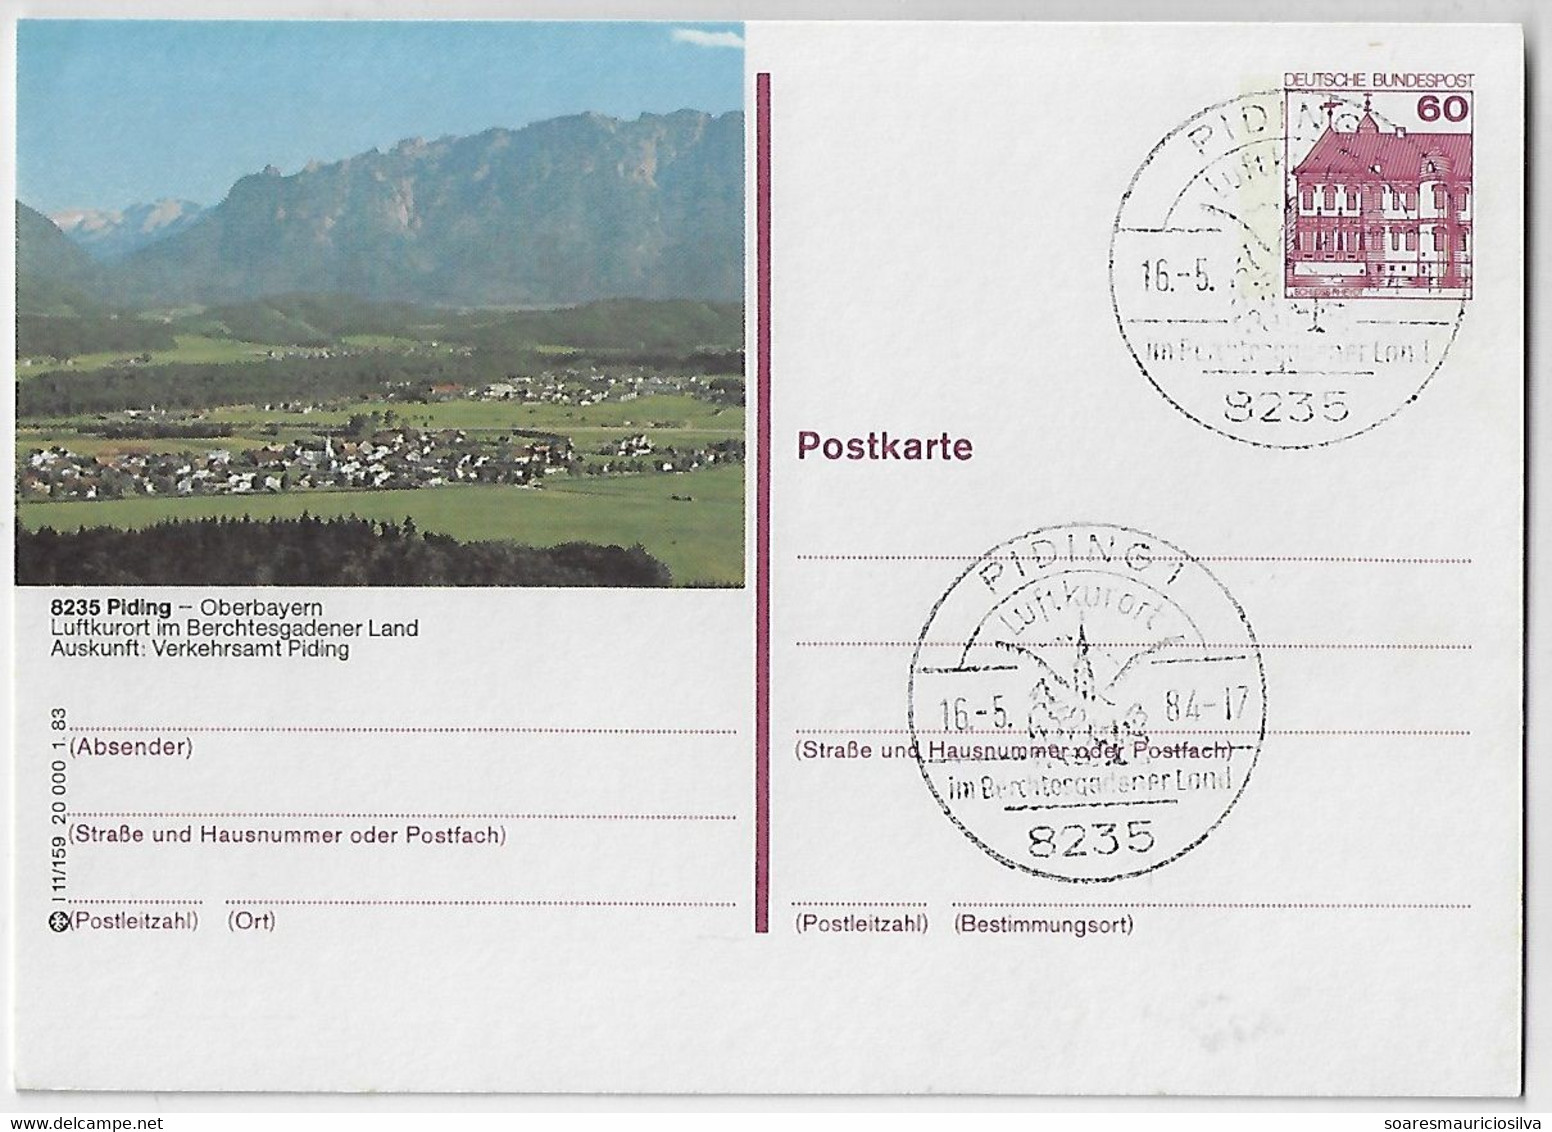 Germany 1984 Postal Stationery Card Stamp Castle Rheydt 60 Pfennig Piging Panorama Upper Bavaria Alps Mountain Range - Privatpostkarten - Gebraucht